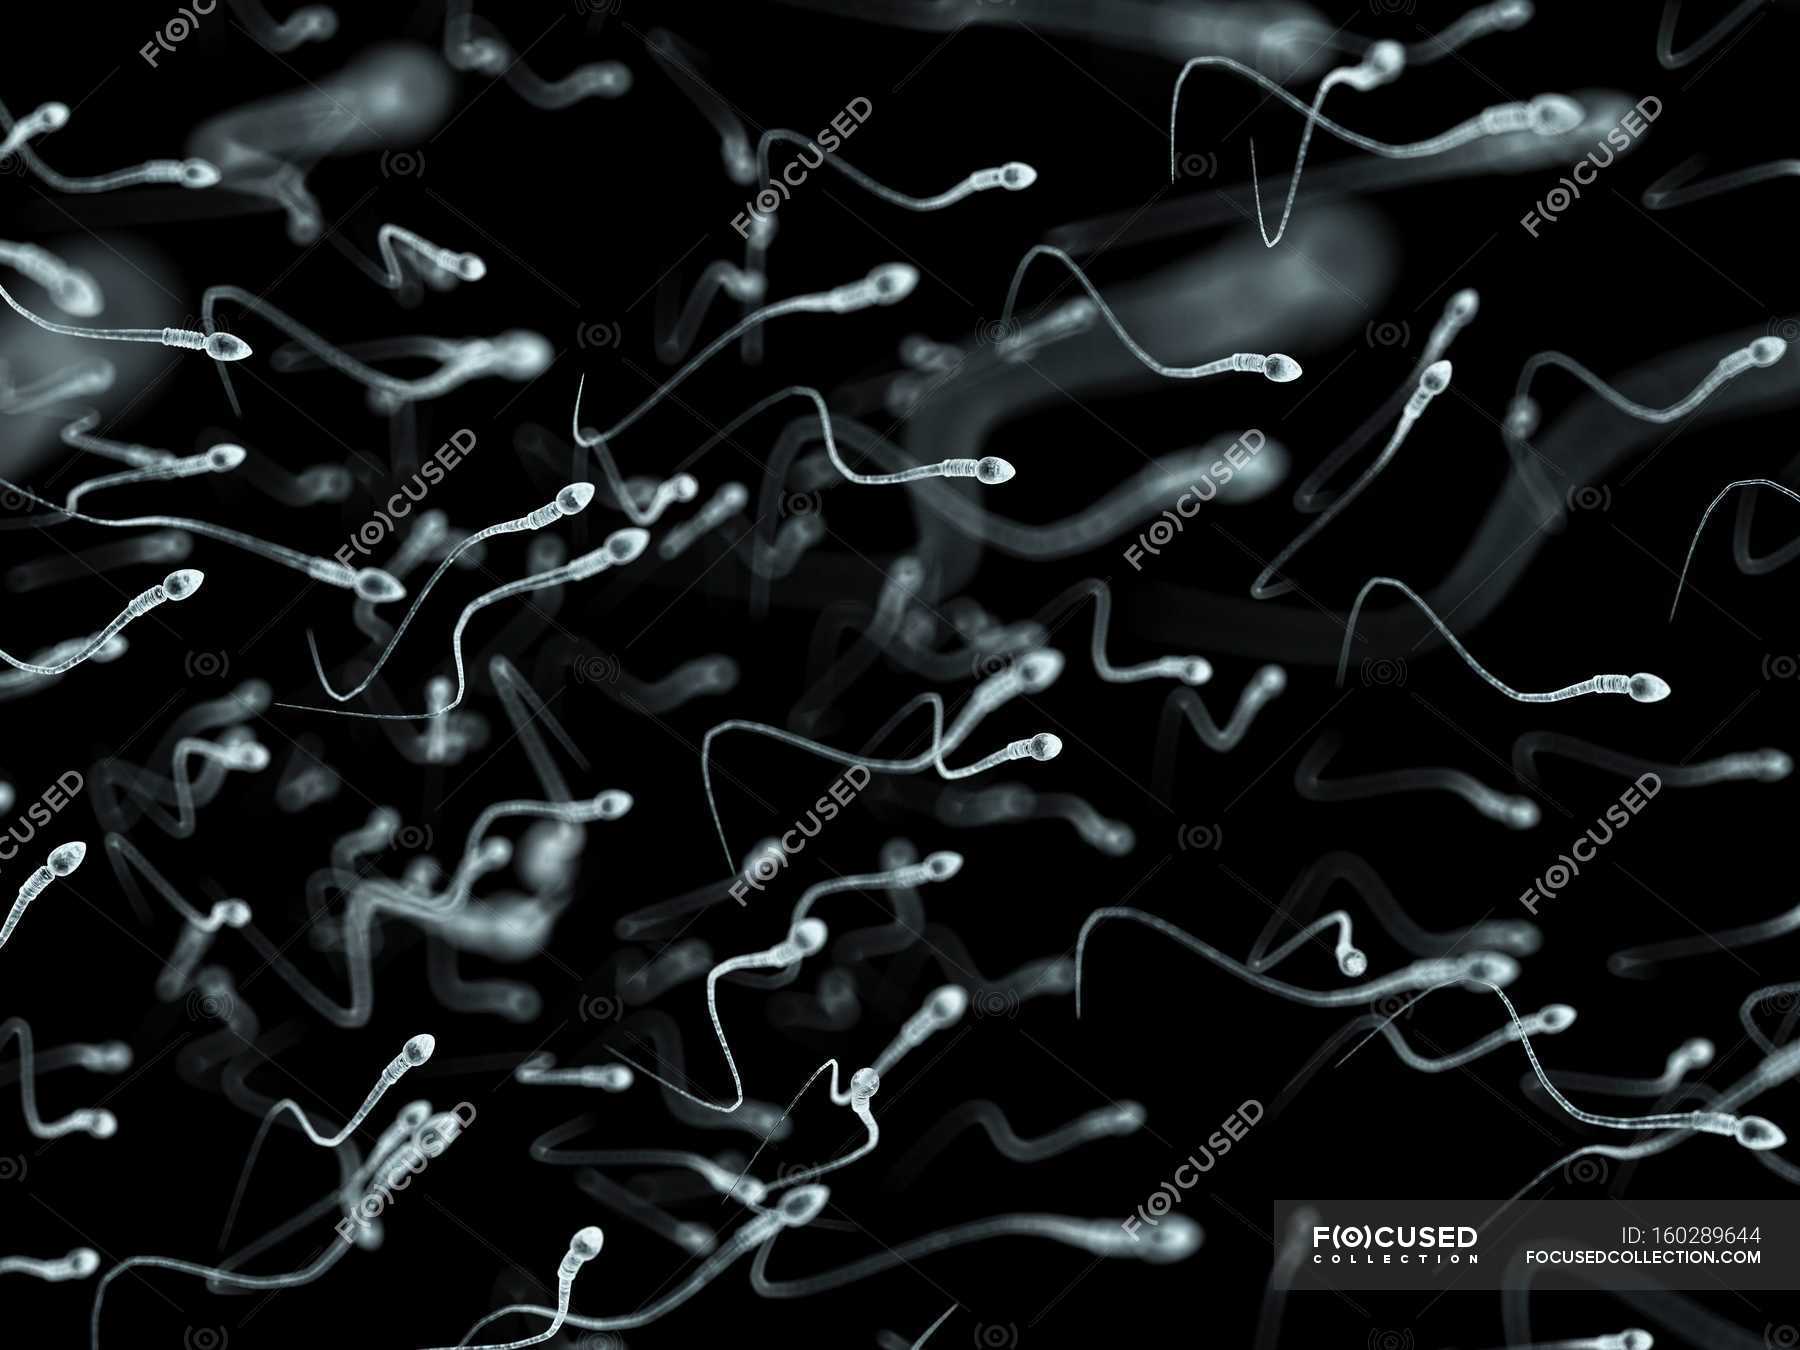 human sperm cell